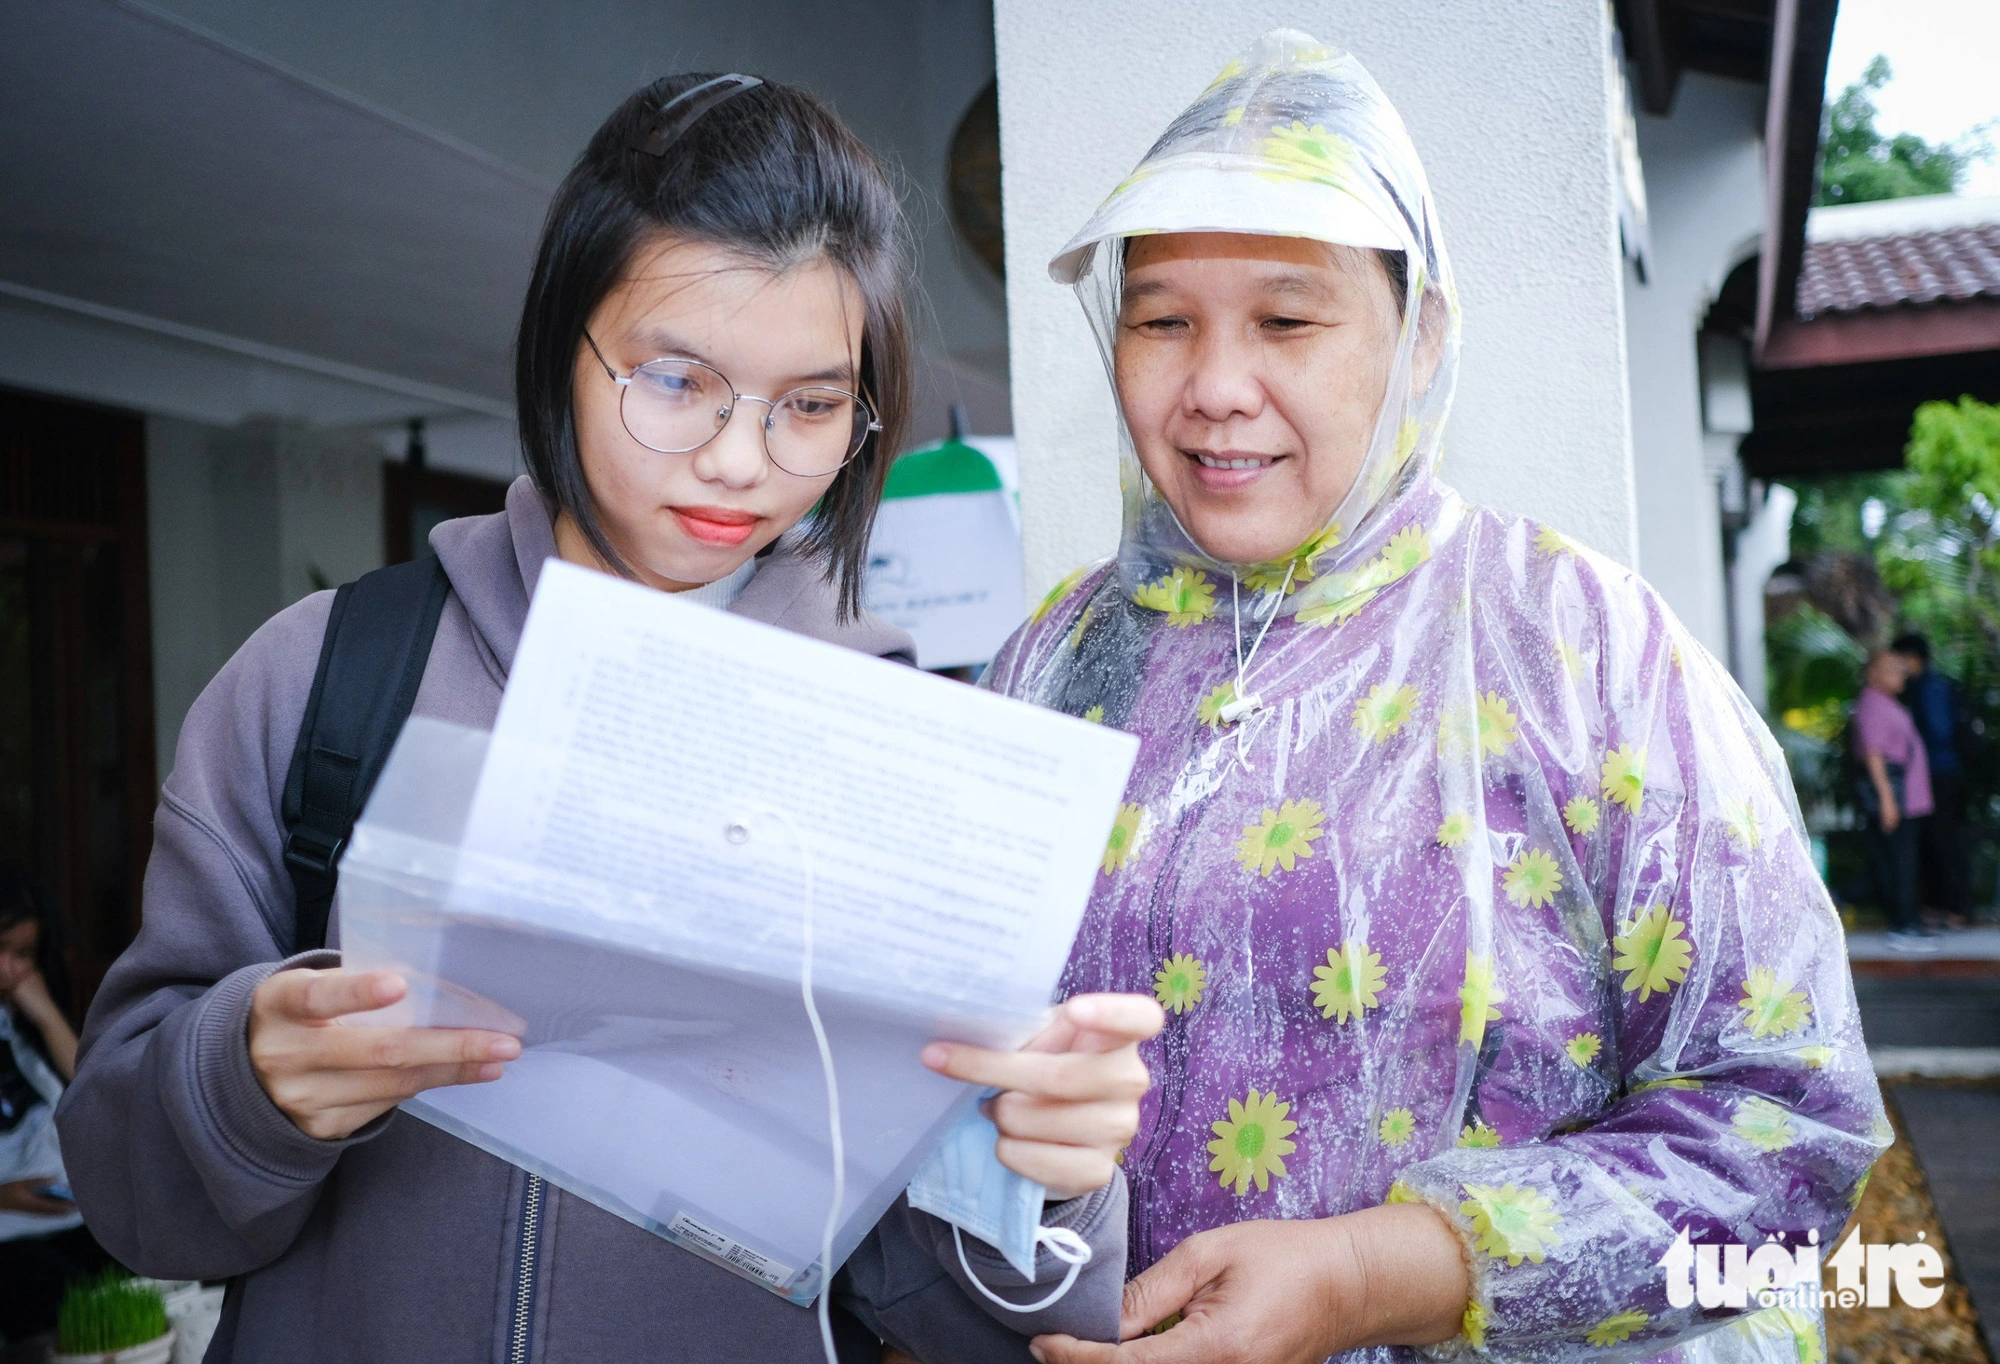 Tân sinh viên Nguyễn Doãn Hà Ngân, Núi Thành, Quảng Nam, cùng mẹ đội mưa tới nhận học bổng Tiếp sức đến trường - Ảnh: TẤN LỰC